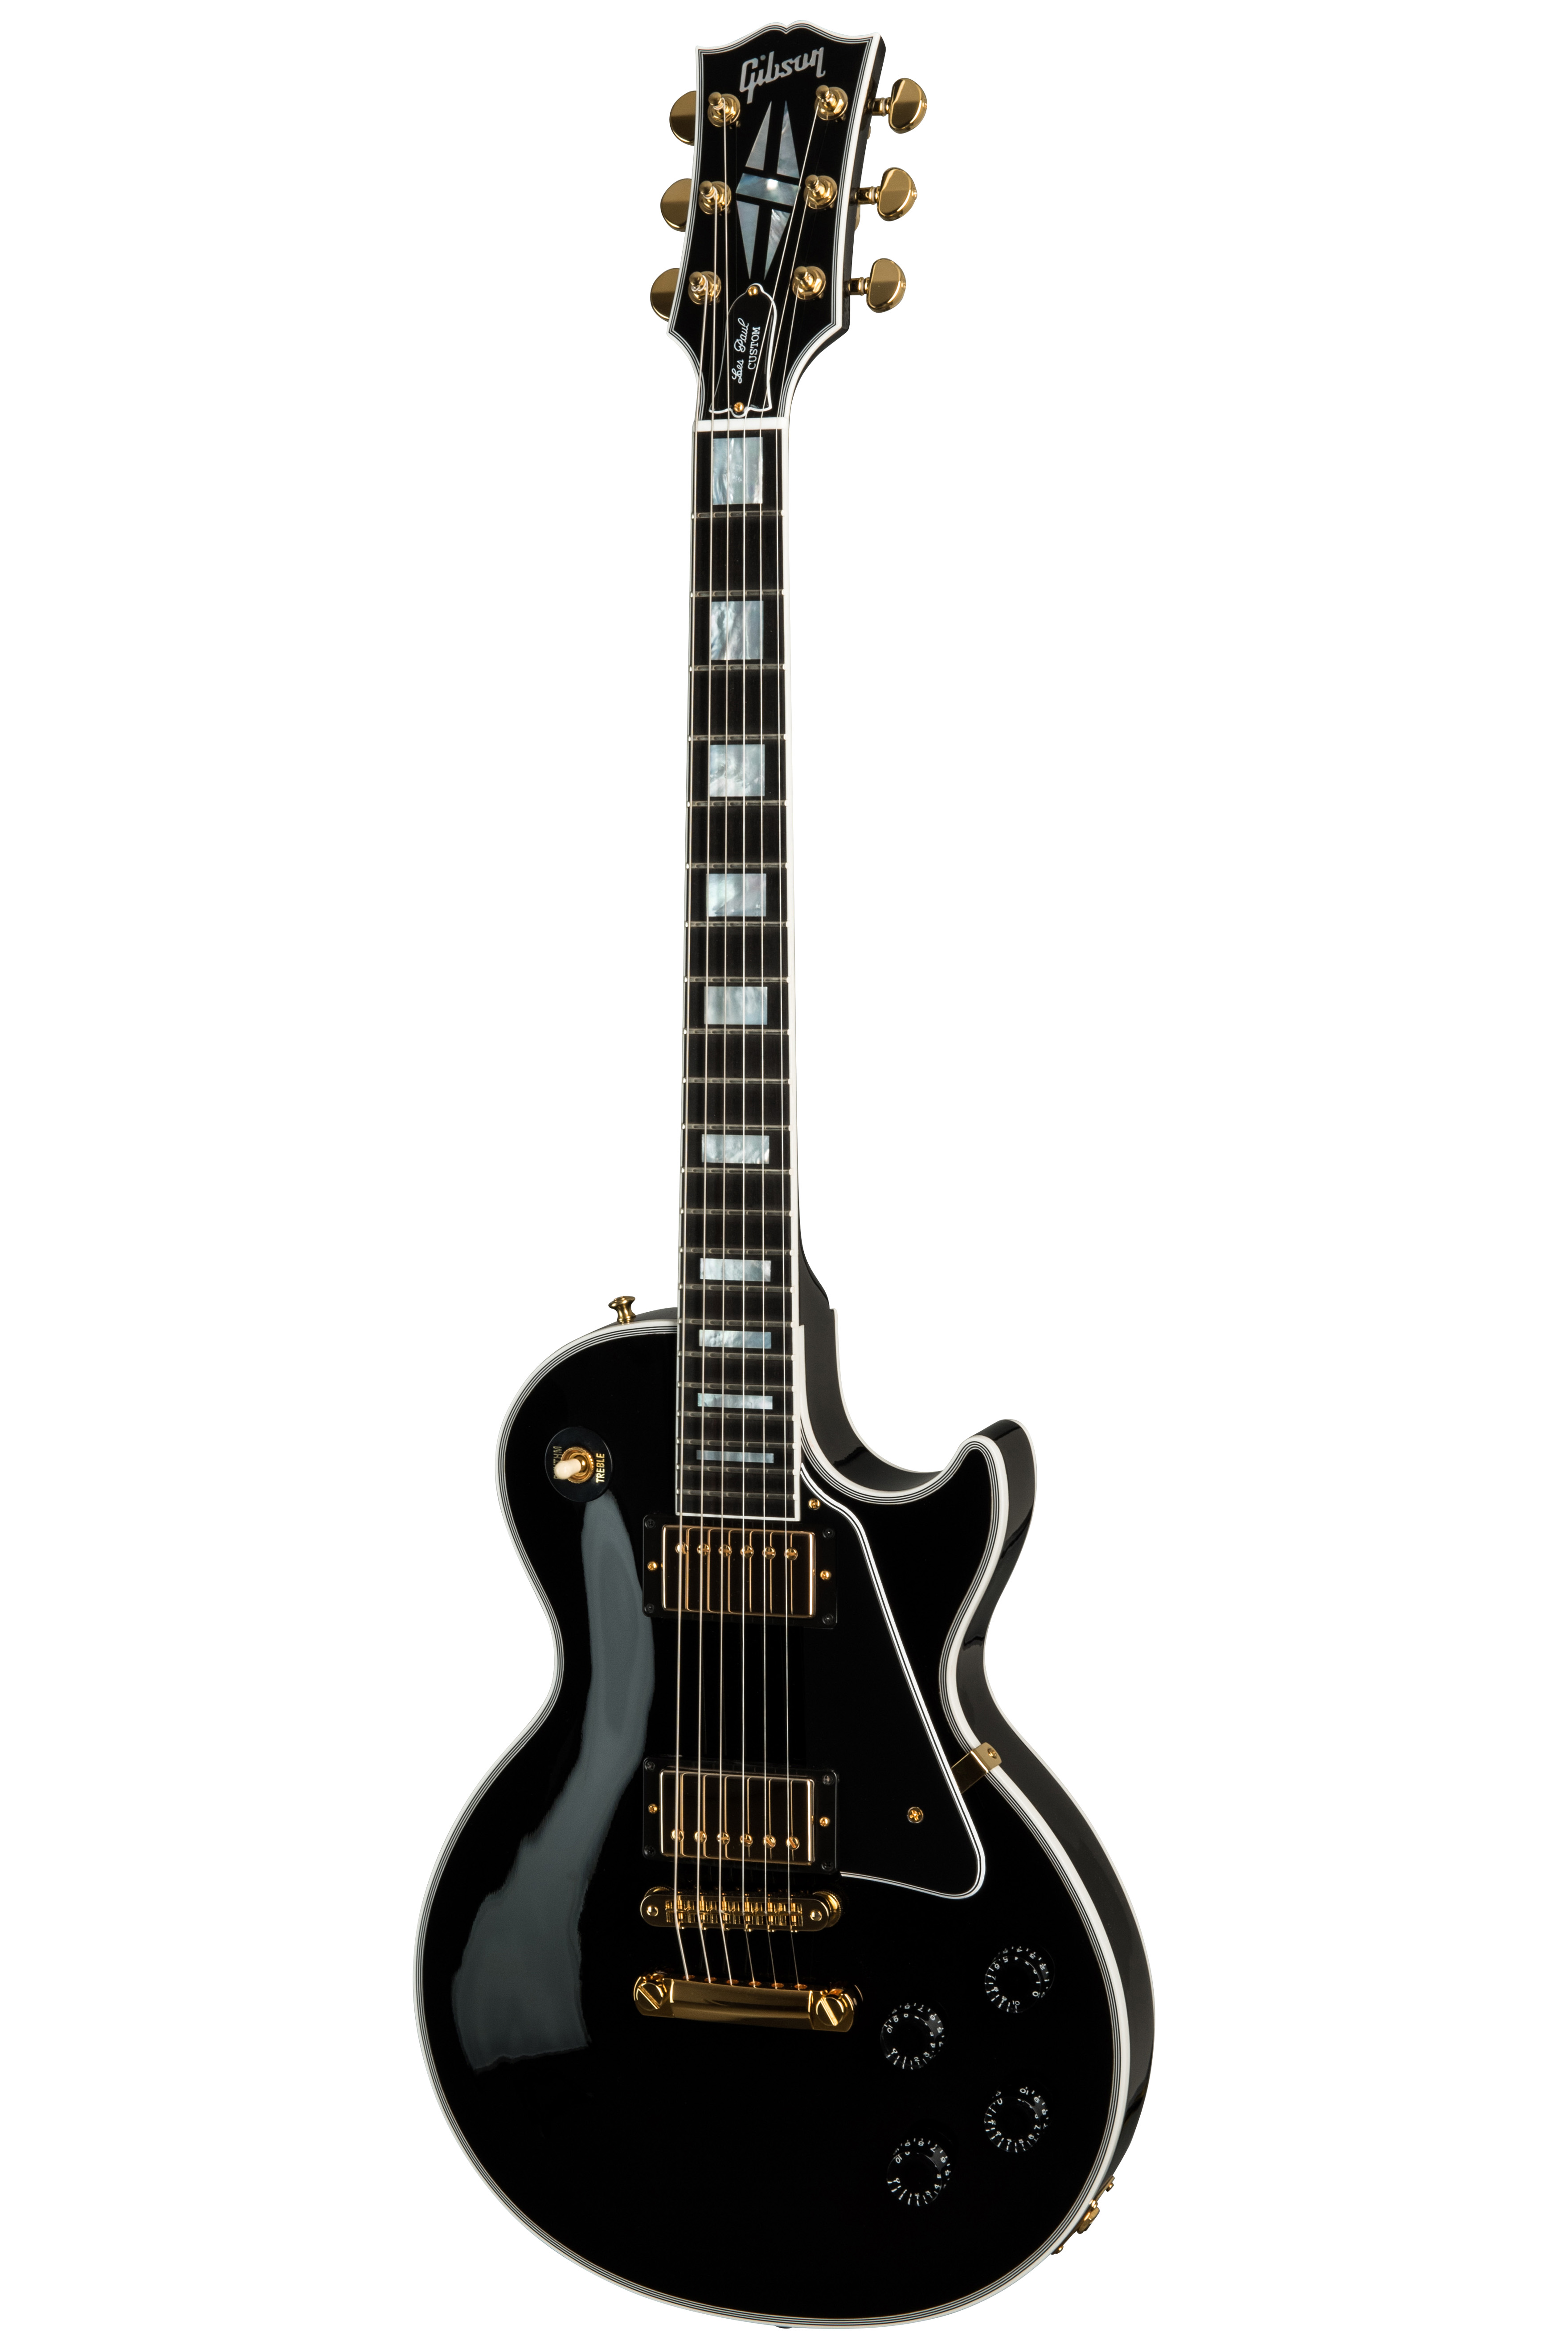 Prosperar Y equipo Salvación Gibson | Les Paul Custom w/ Ebony Fingerboard Gloss Ebony